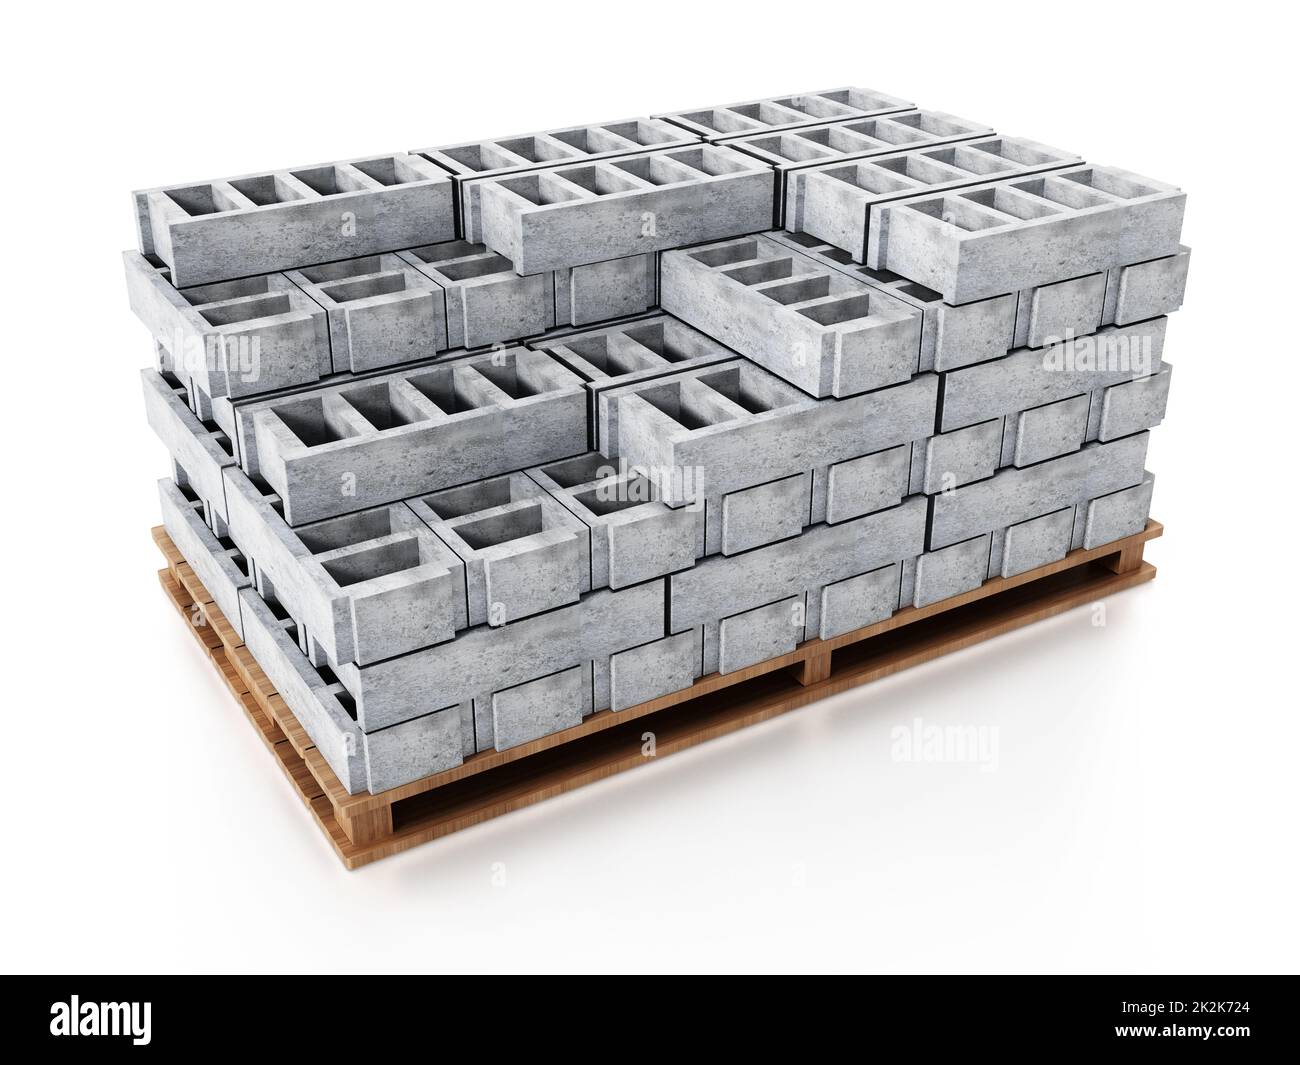 Pile de briques de construction grises sur une base en bois. 3D illustration Banque D'Images